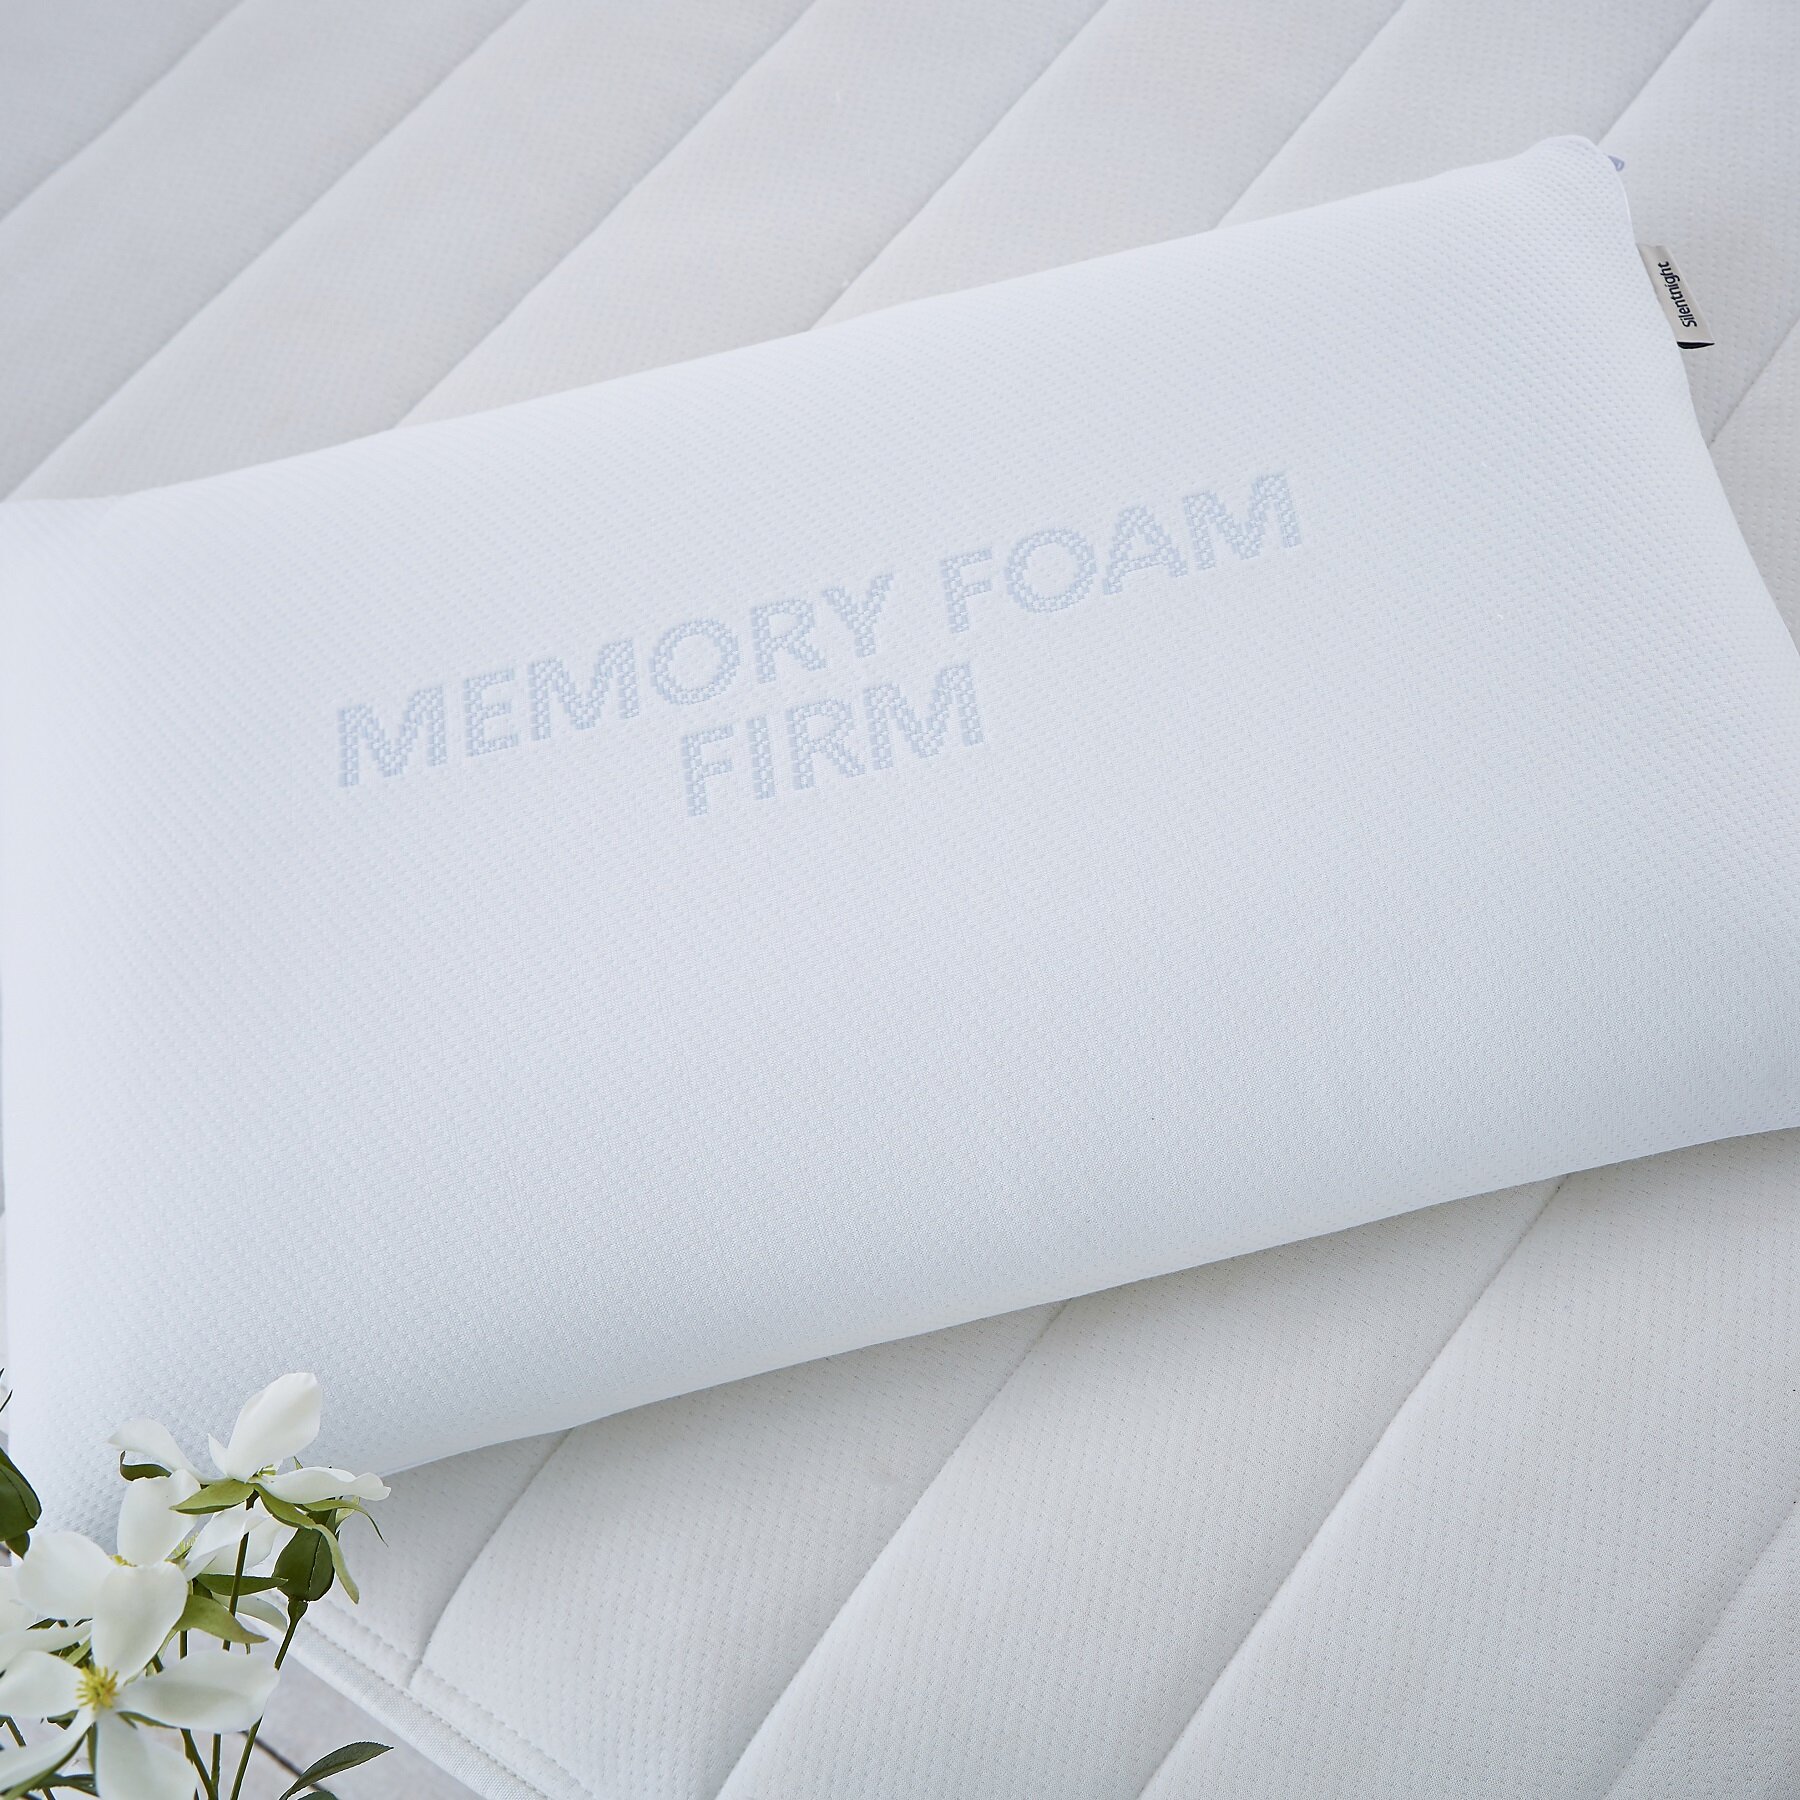 Silentnight Memory Foam Firm Pillow Reviews Wayfair Co Uk